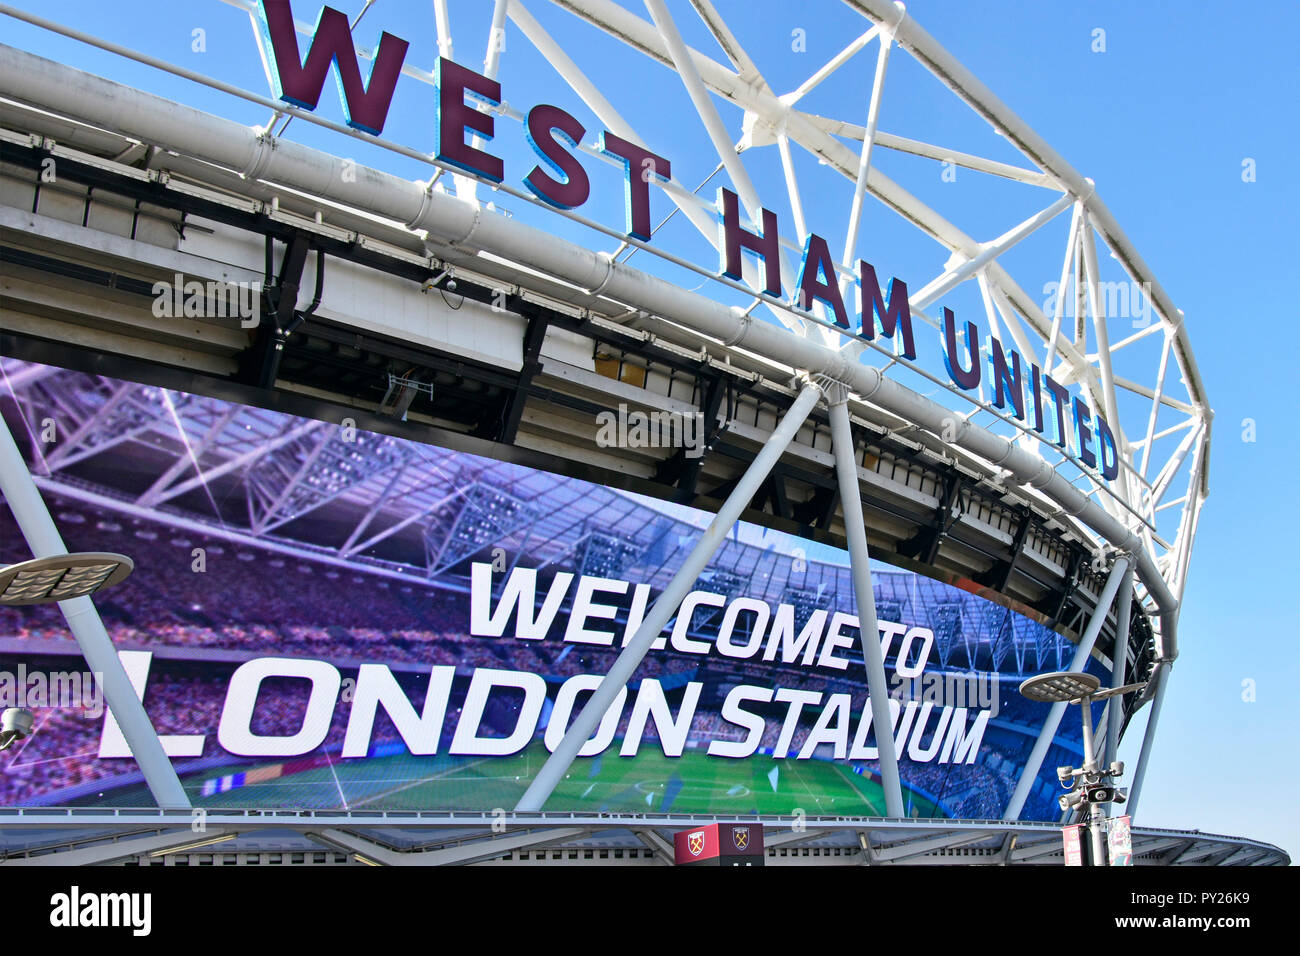 Zeichen für London Stadium auf gigantischen Outdoor TV-Bildschirm unten West Ham United sign Olympiastadion Queen Elizabeth Olympic Park England UK Willkommen Stockfoto